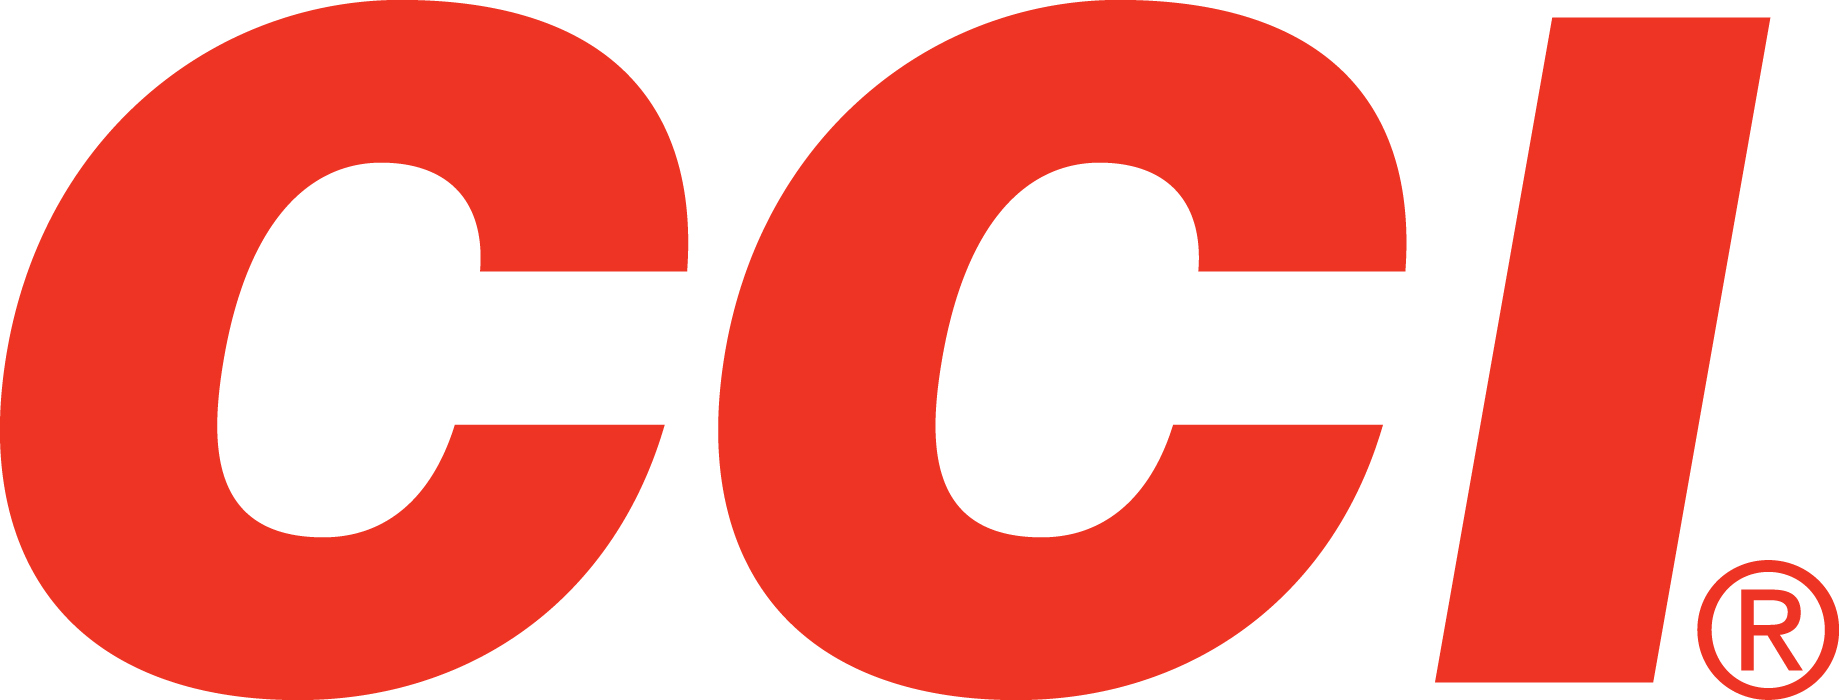 CCI - CCI